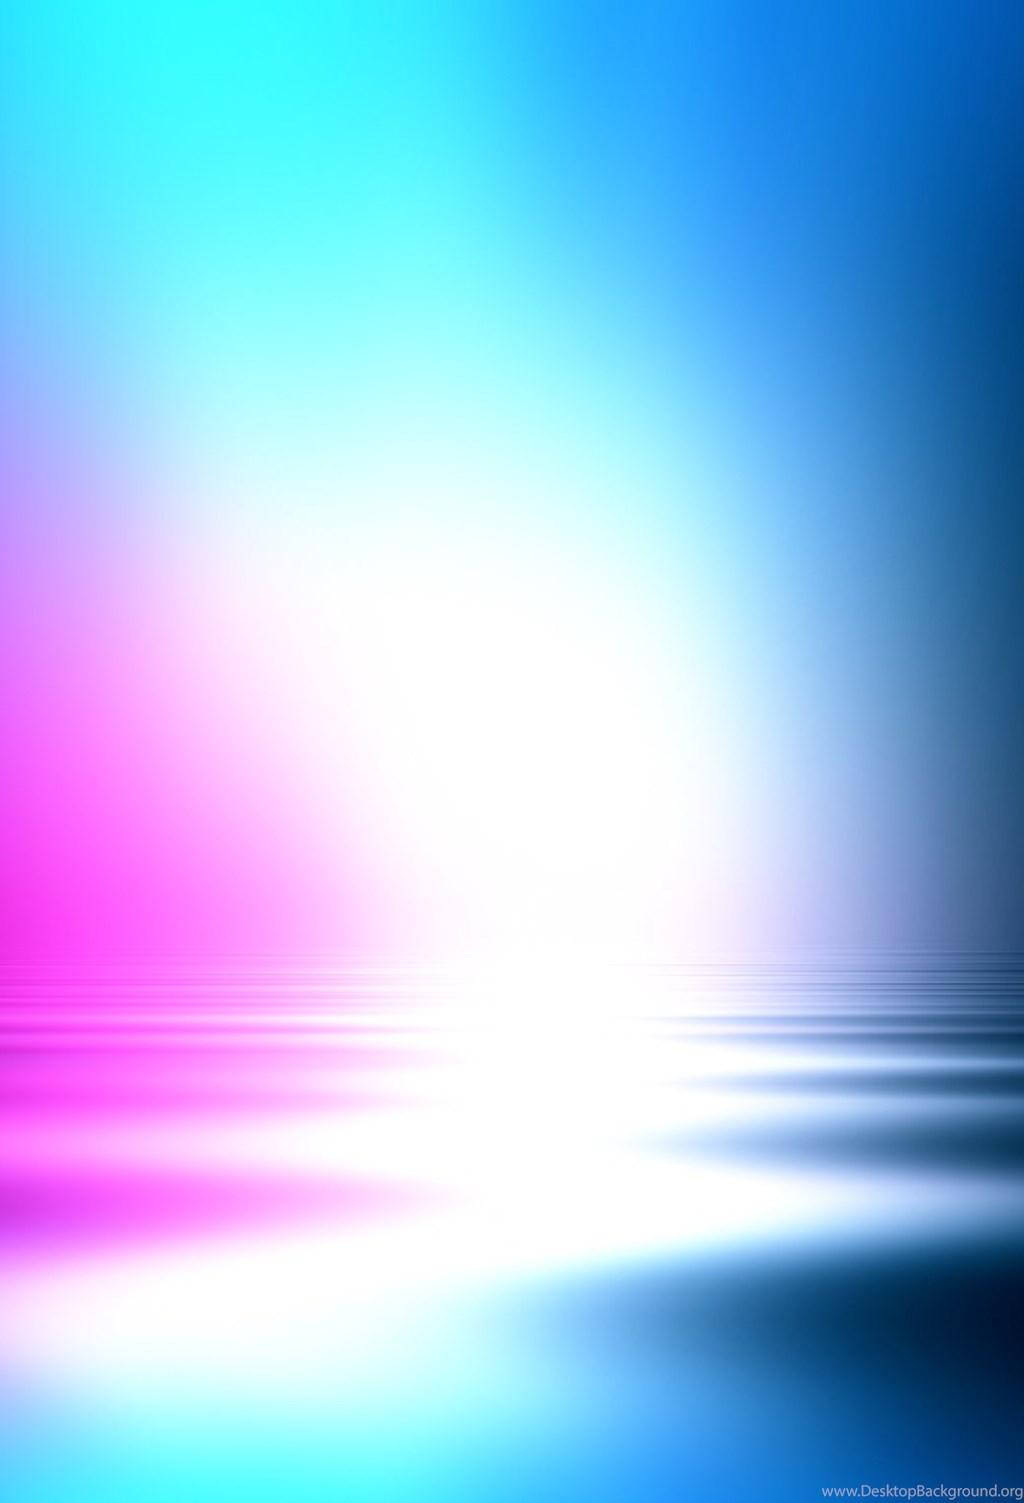 Mixture Of Colors iOS 7 Wallpaper